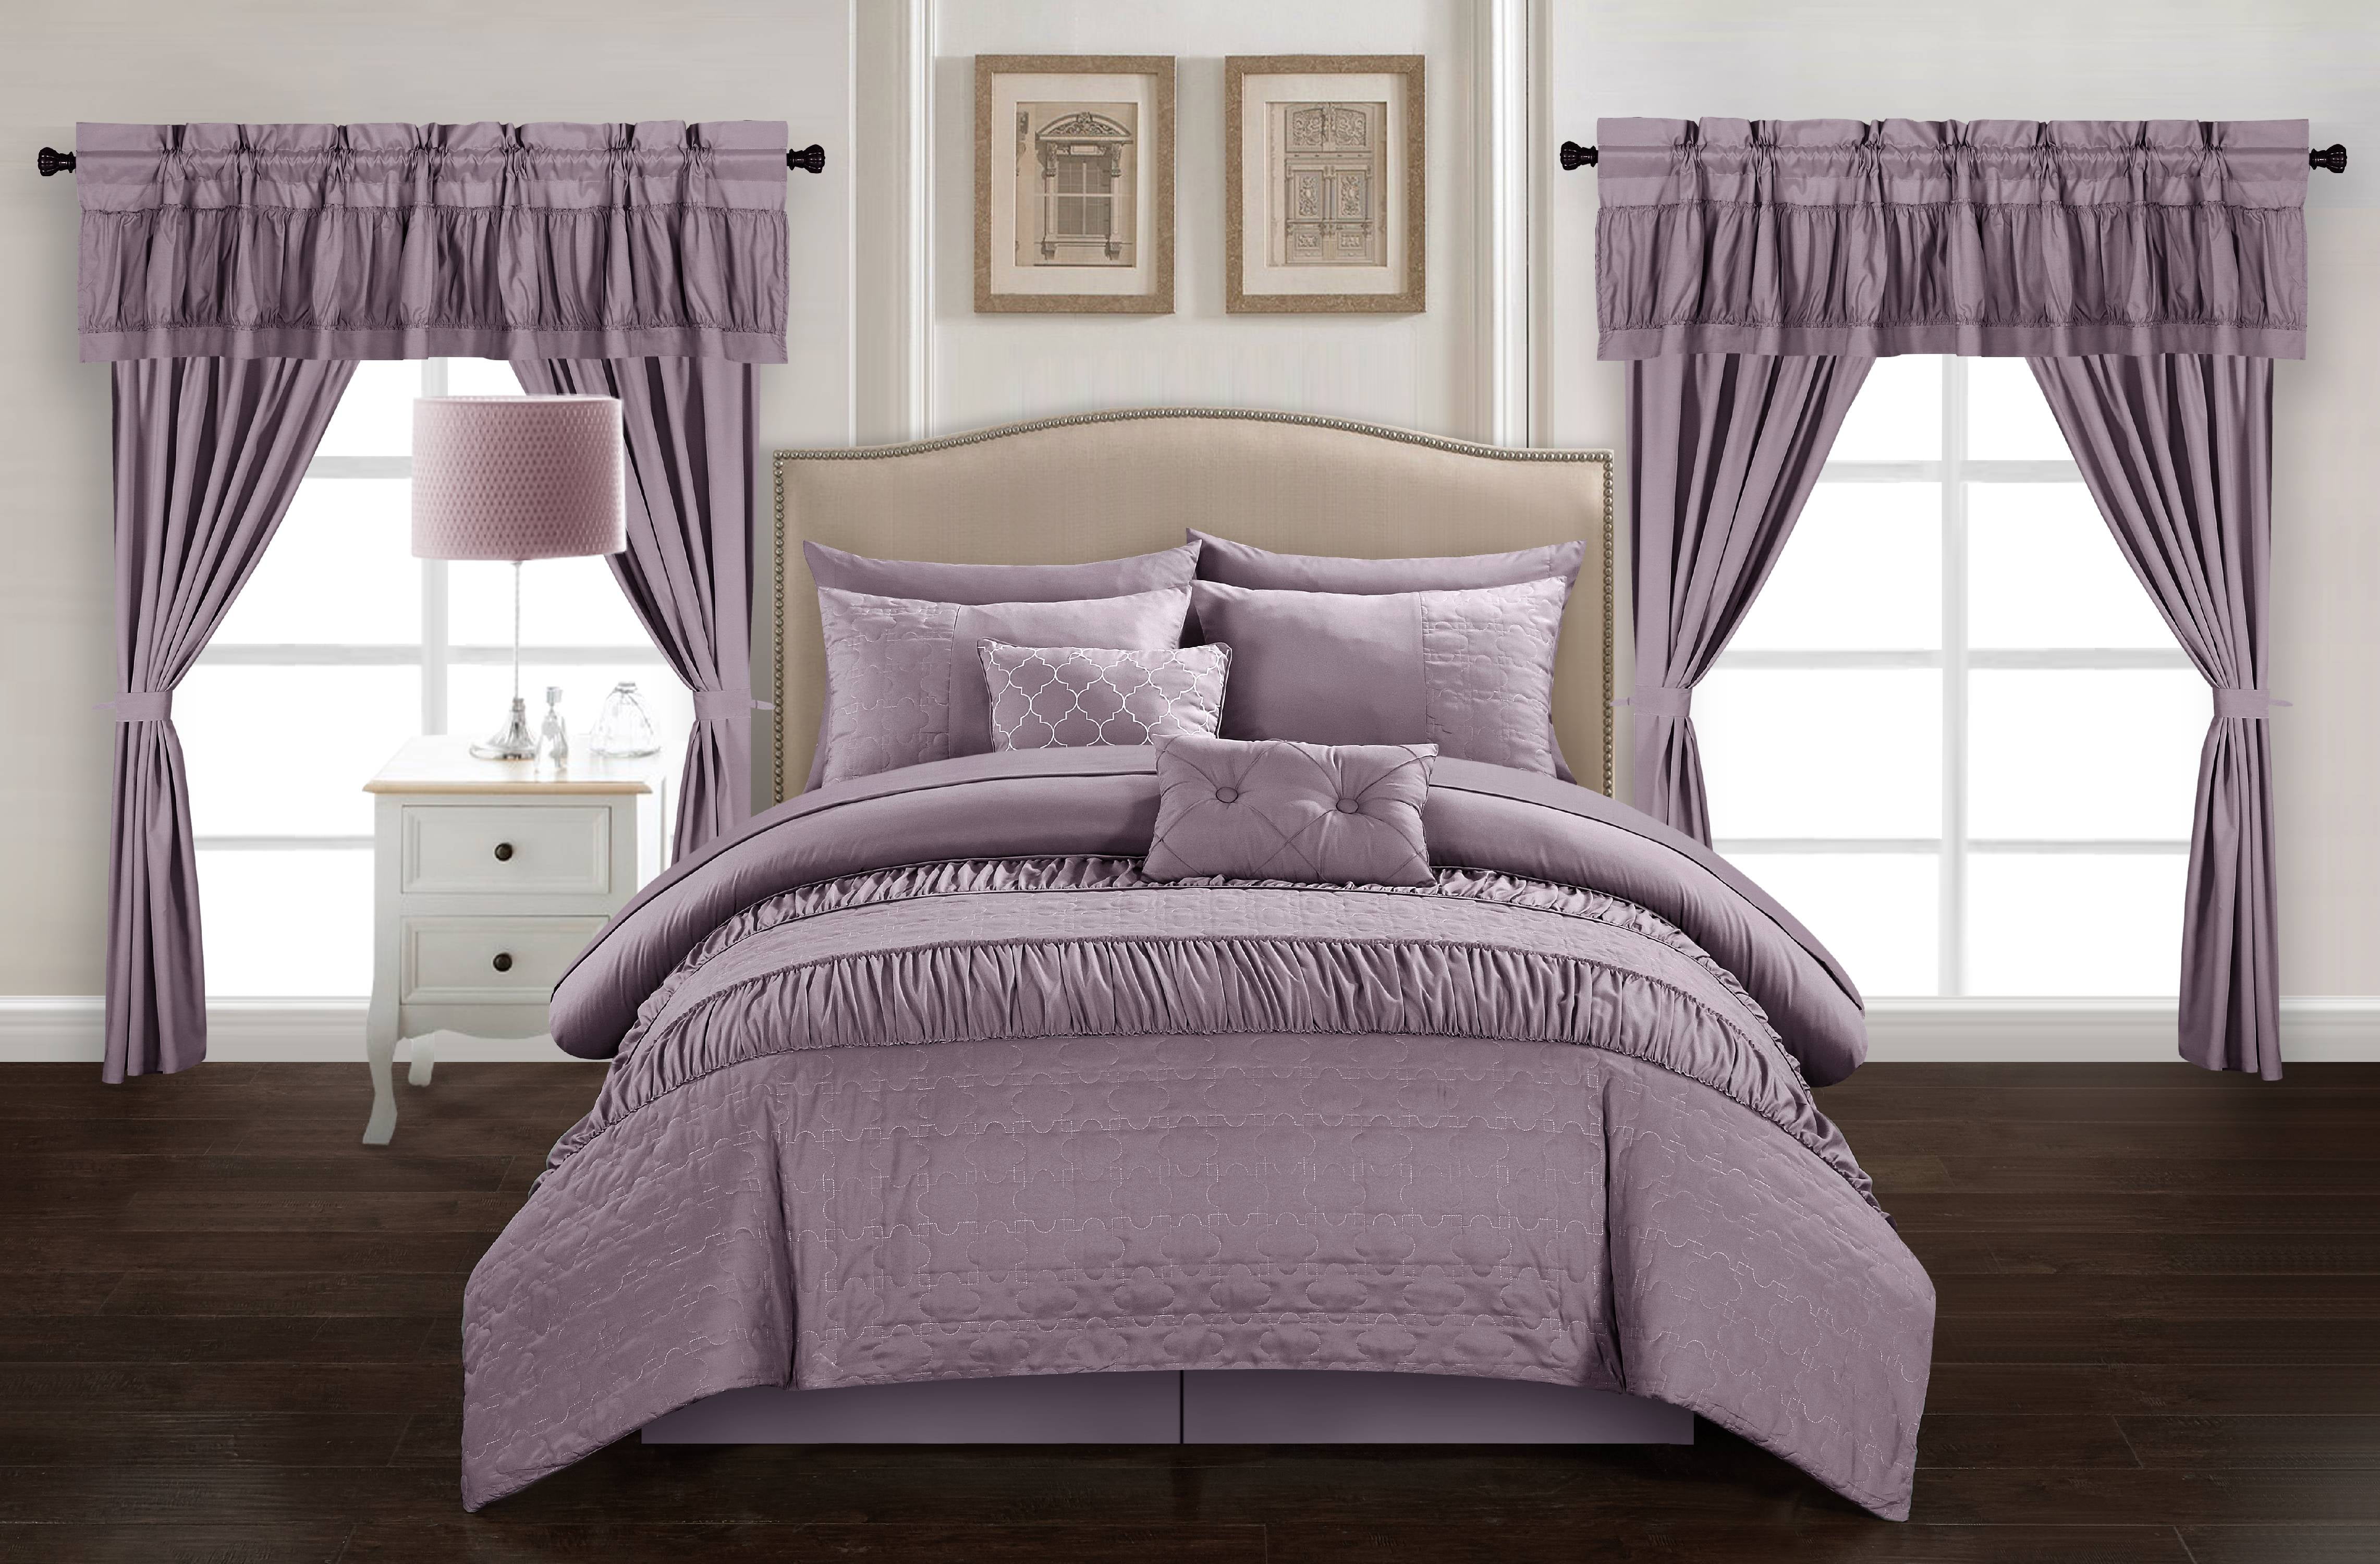 Dirch 20 Piece Comforter Bed in a Bag Sheet Set Curtains Pillows Shams Plum 